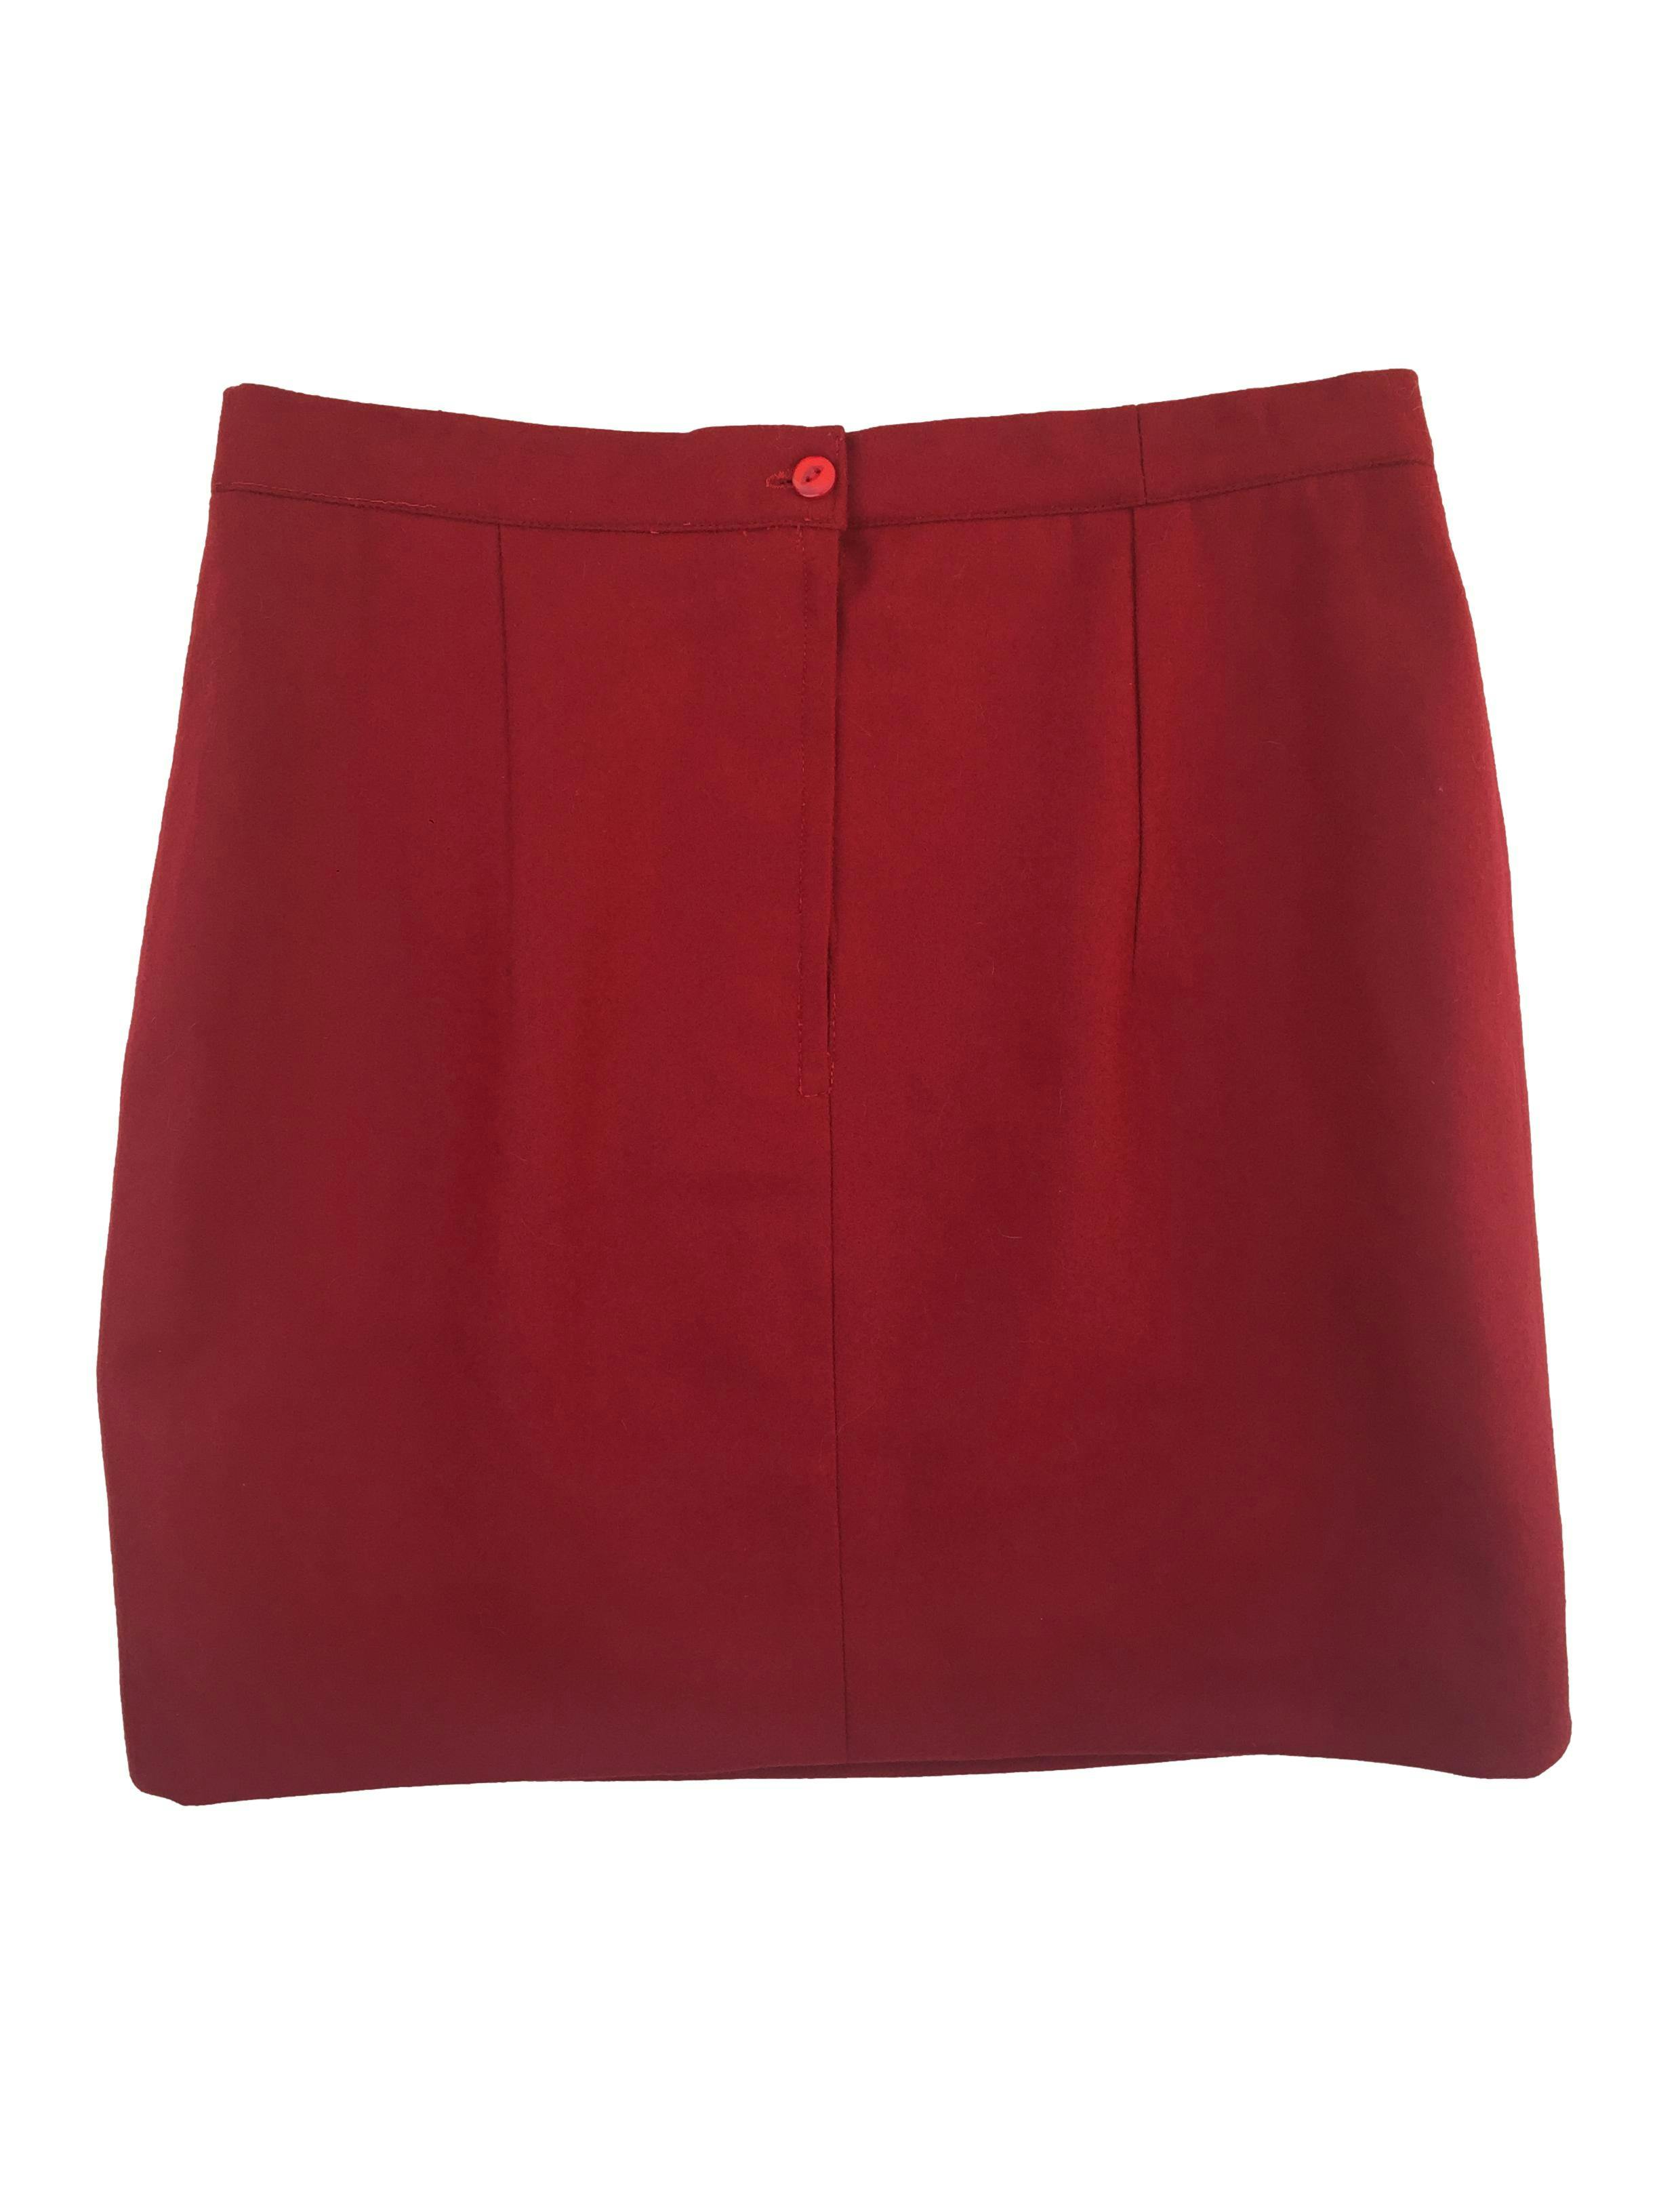 Falda mini de paño color rojo, tiene pinzas, forro y cierre posterior. Cintura 80cm, Largo 45cm.